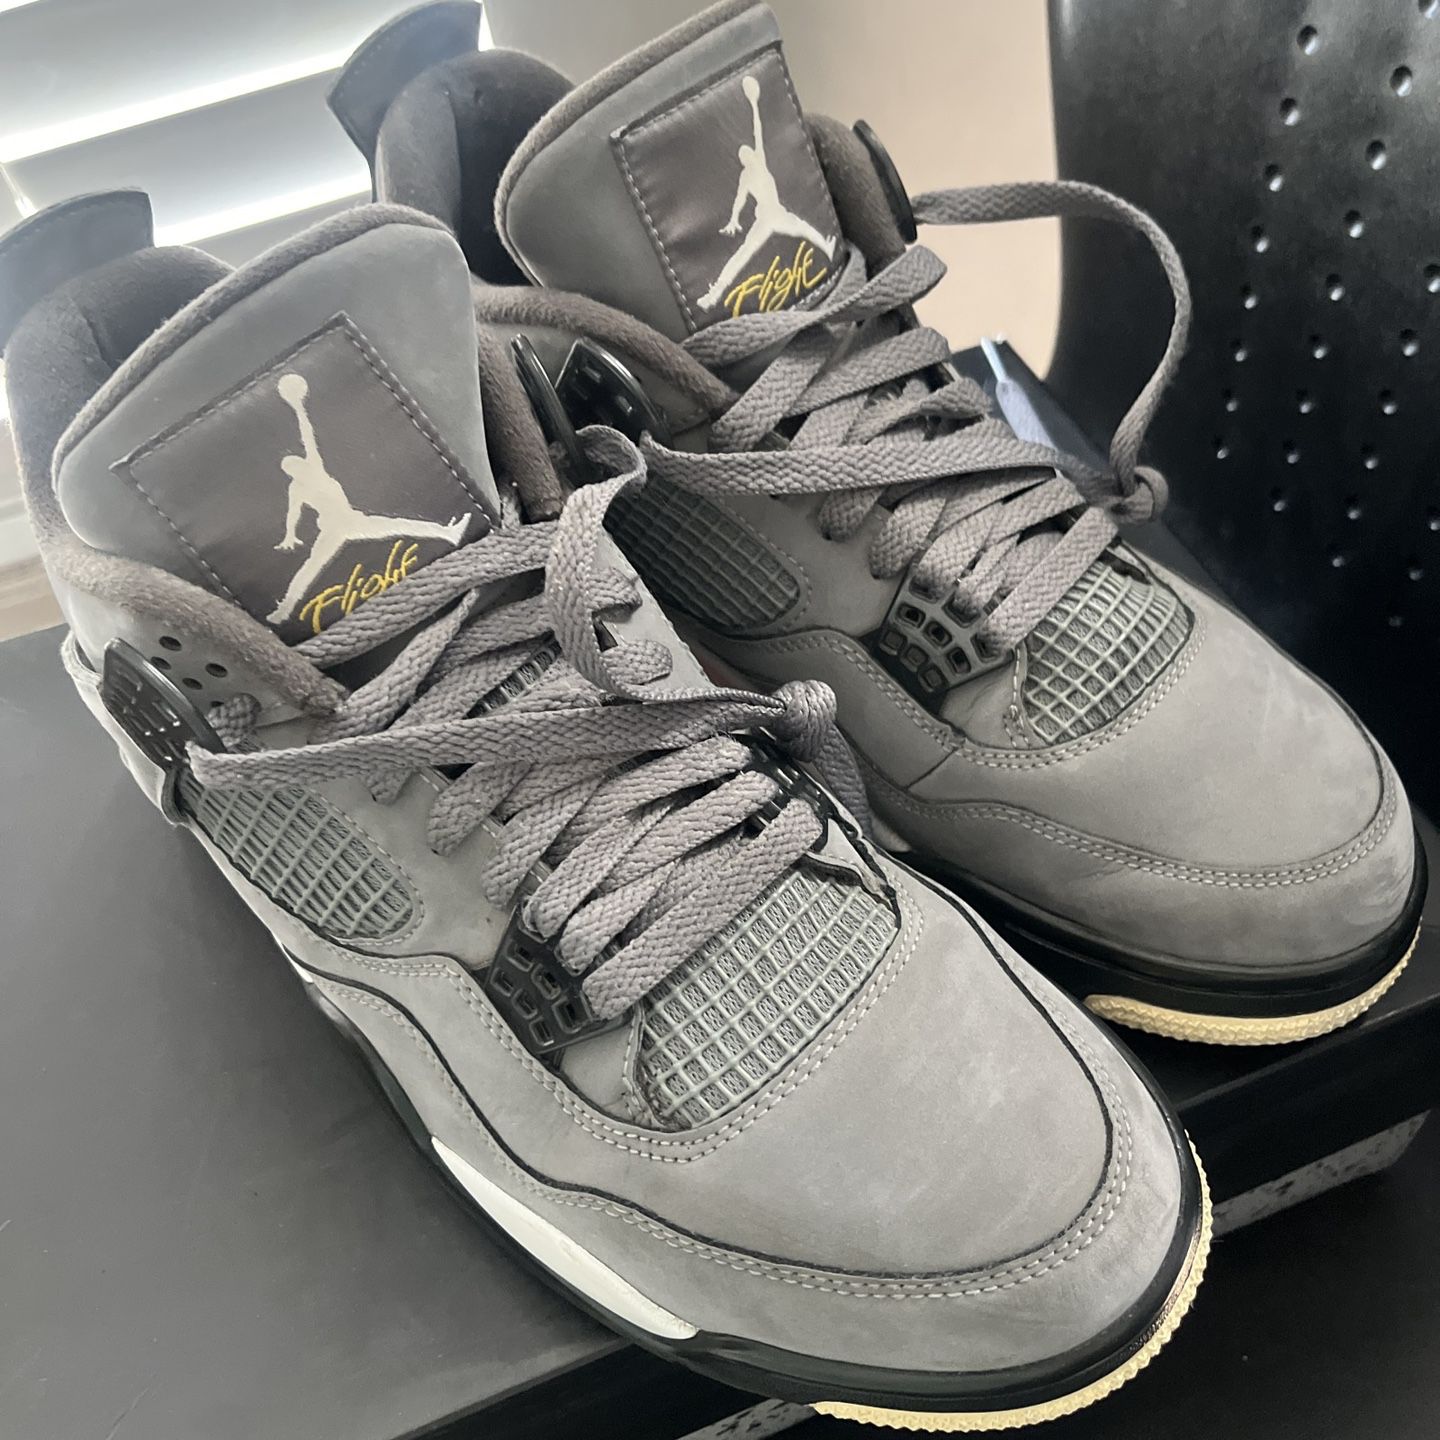 Jordan 4 Cool Grey 